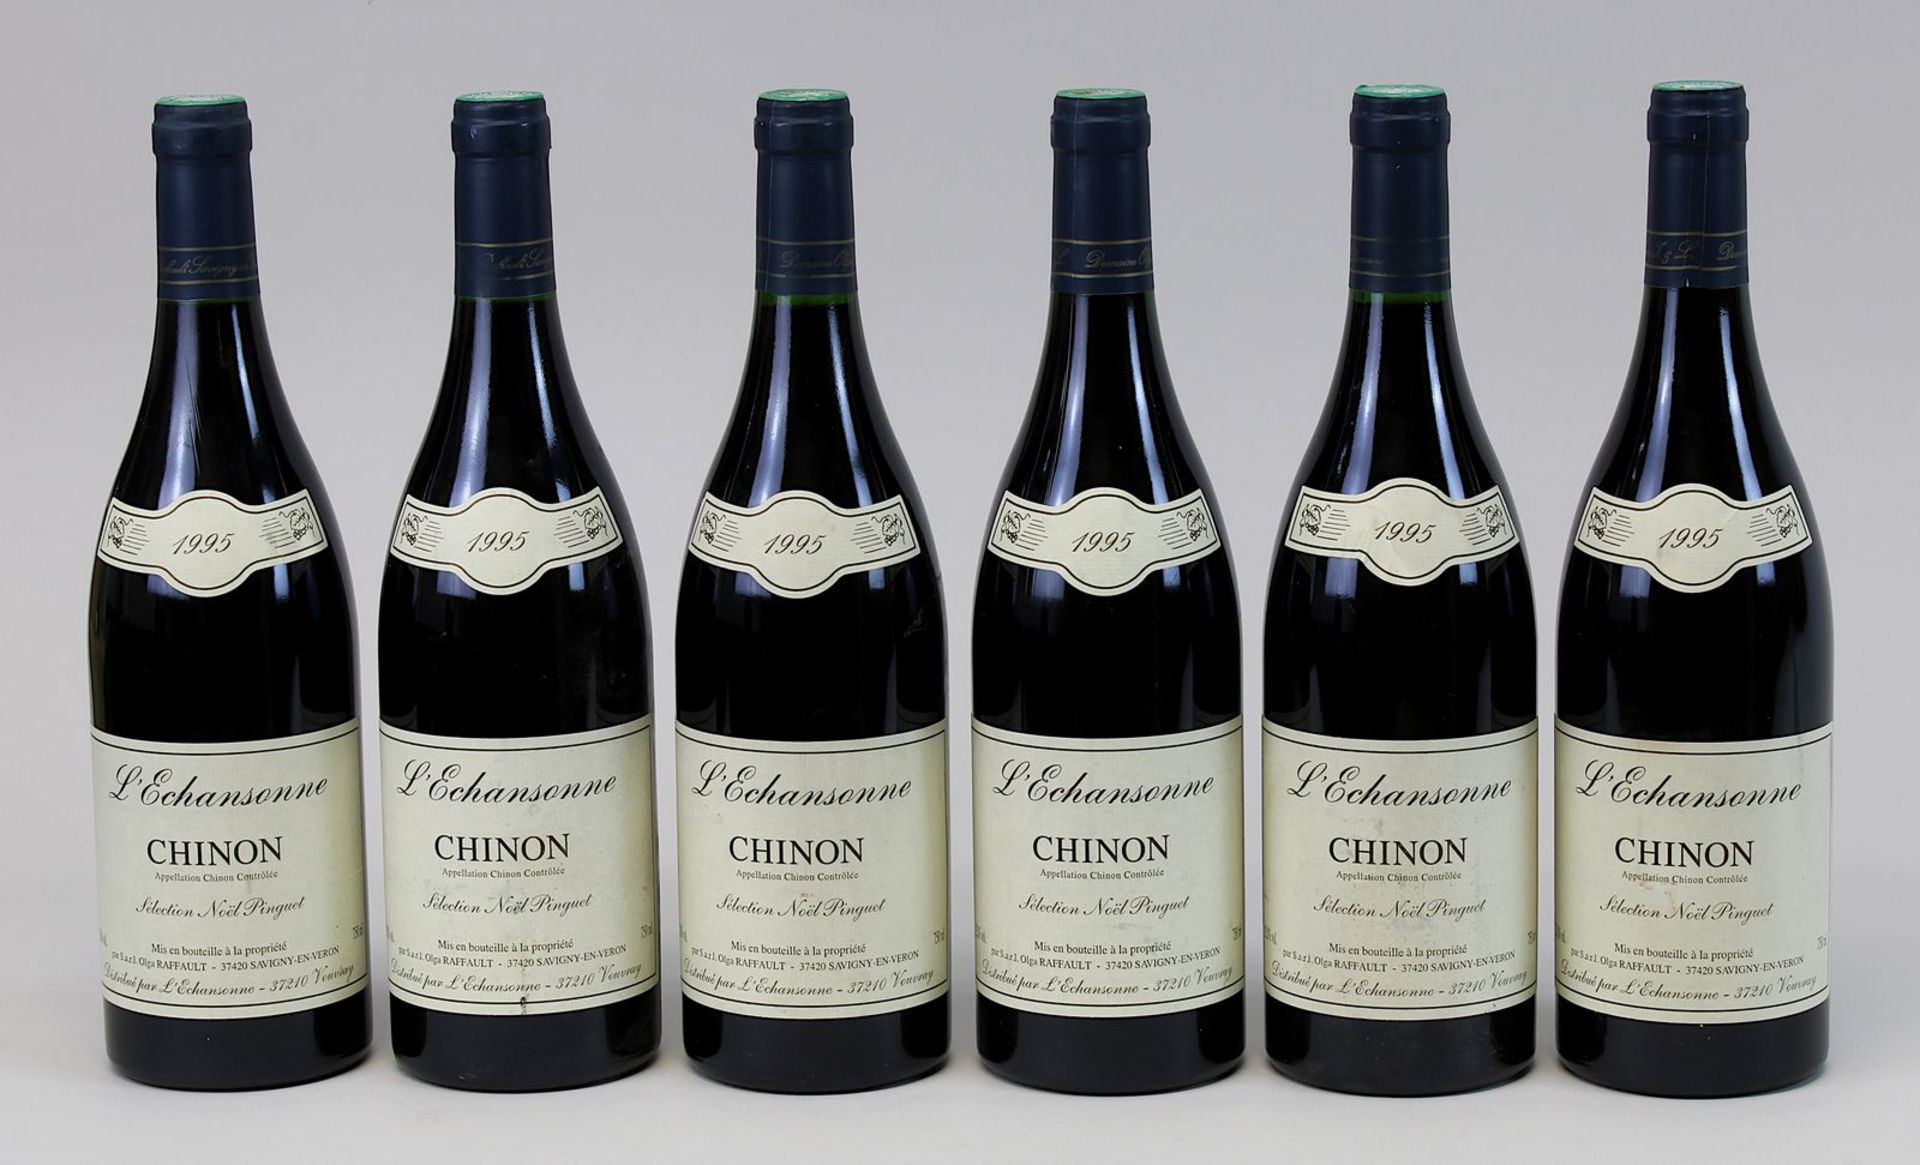 6 Flaschen 1995er L'Echansonne, Chinon, Selection Noel Pinguet, Savigny-En-Veron, jeweils gute